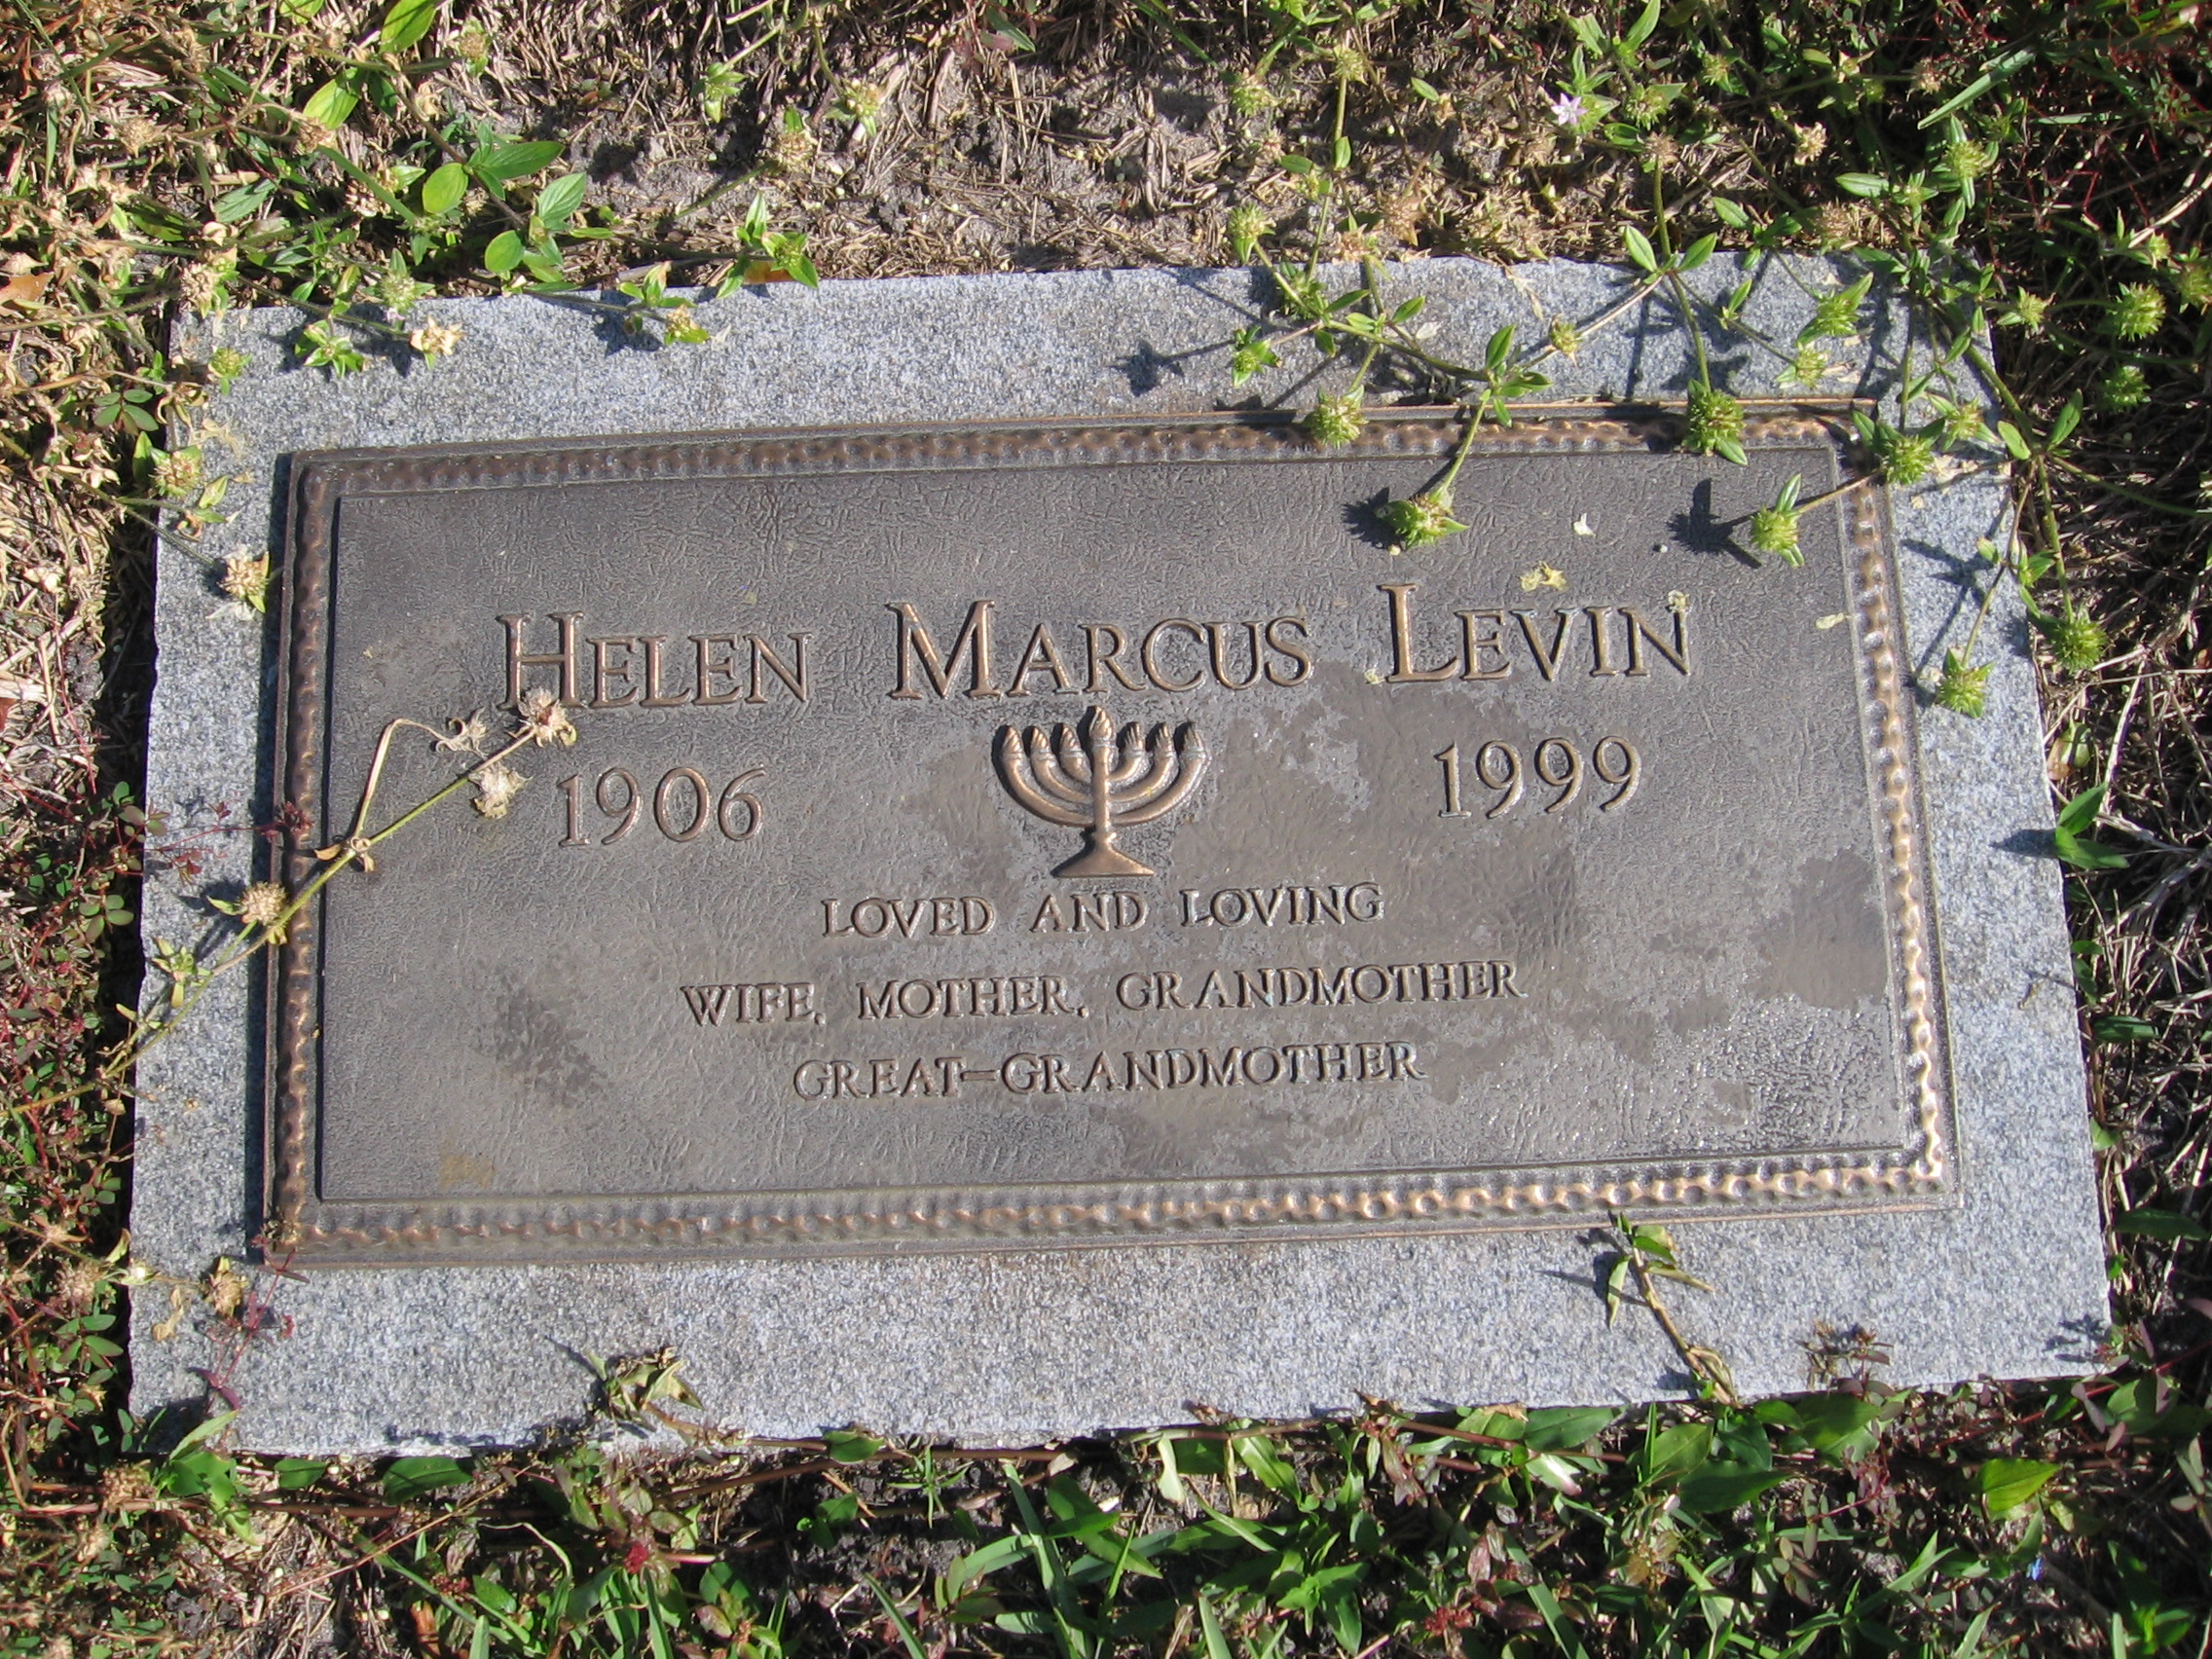 Helen Marcus Levin